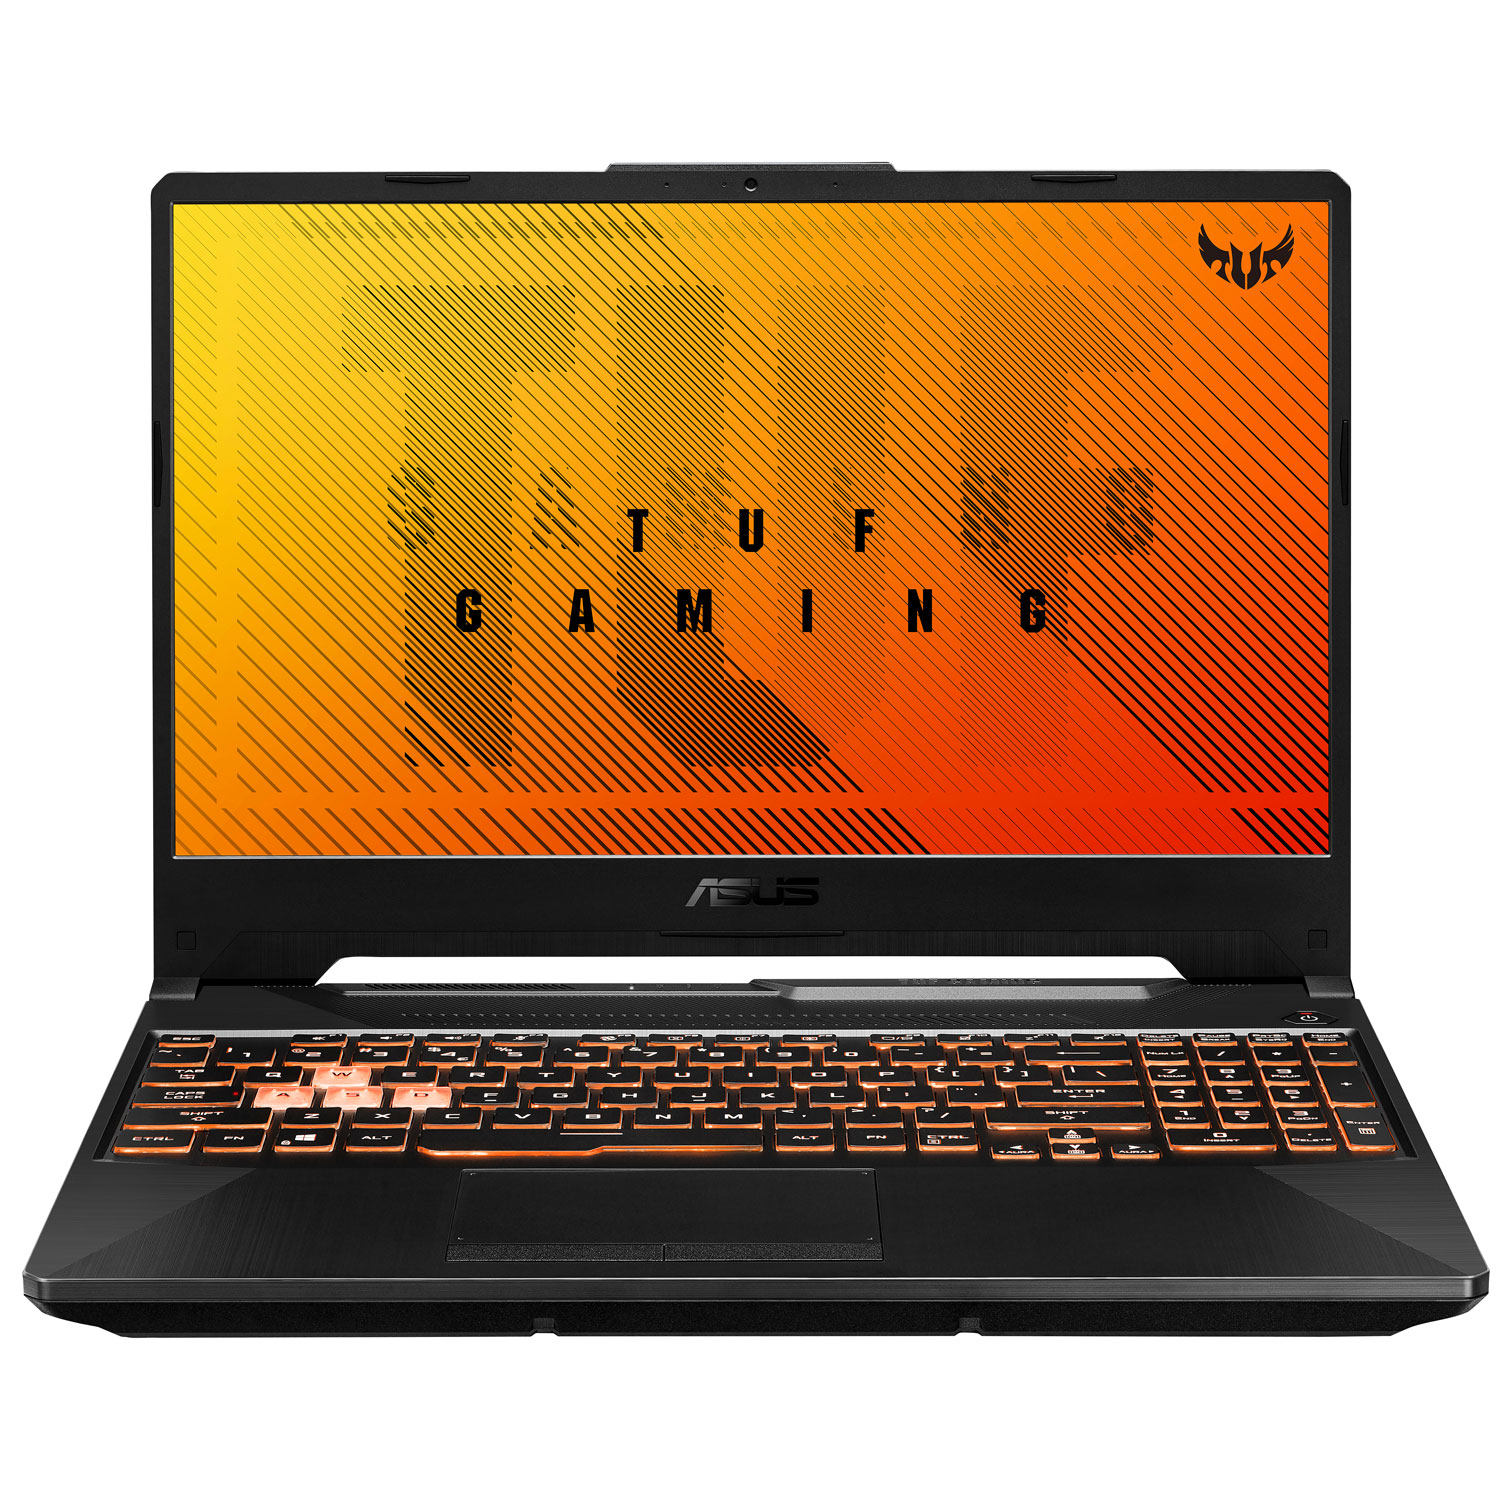 ASUS TUF Gaming F15 15.6" Gaming Laptop (Intel Core i5-10300H/512GB SSD/8GB RAM/GeForce GTX 1650)